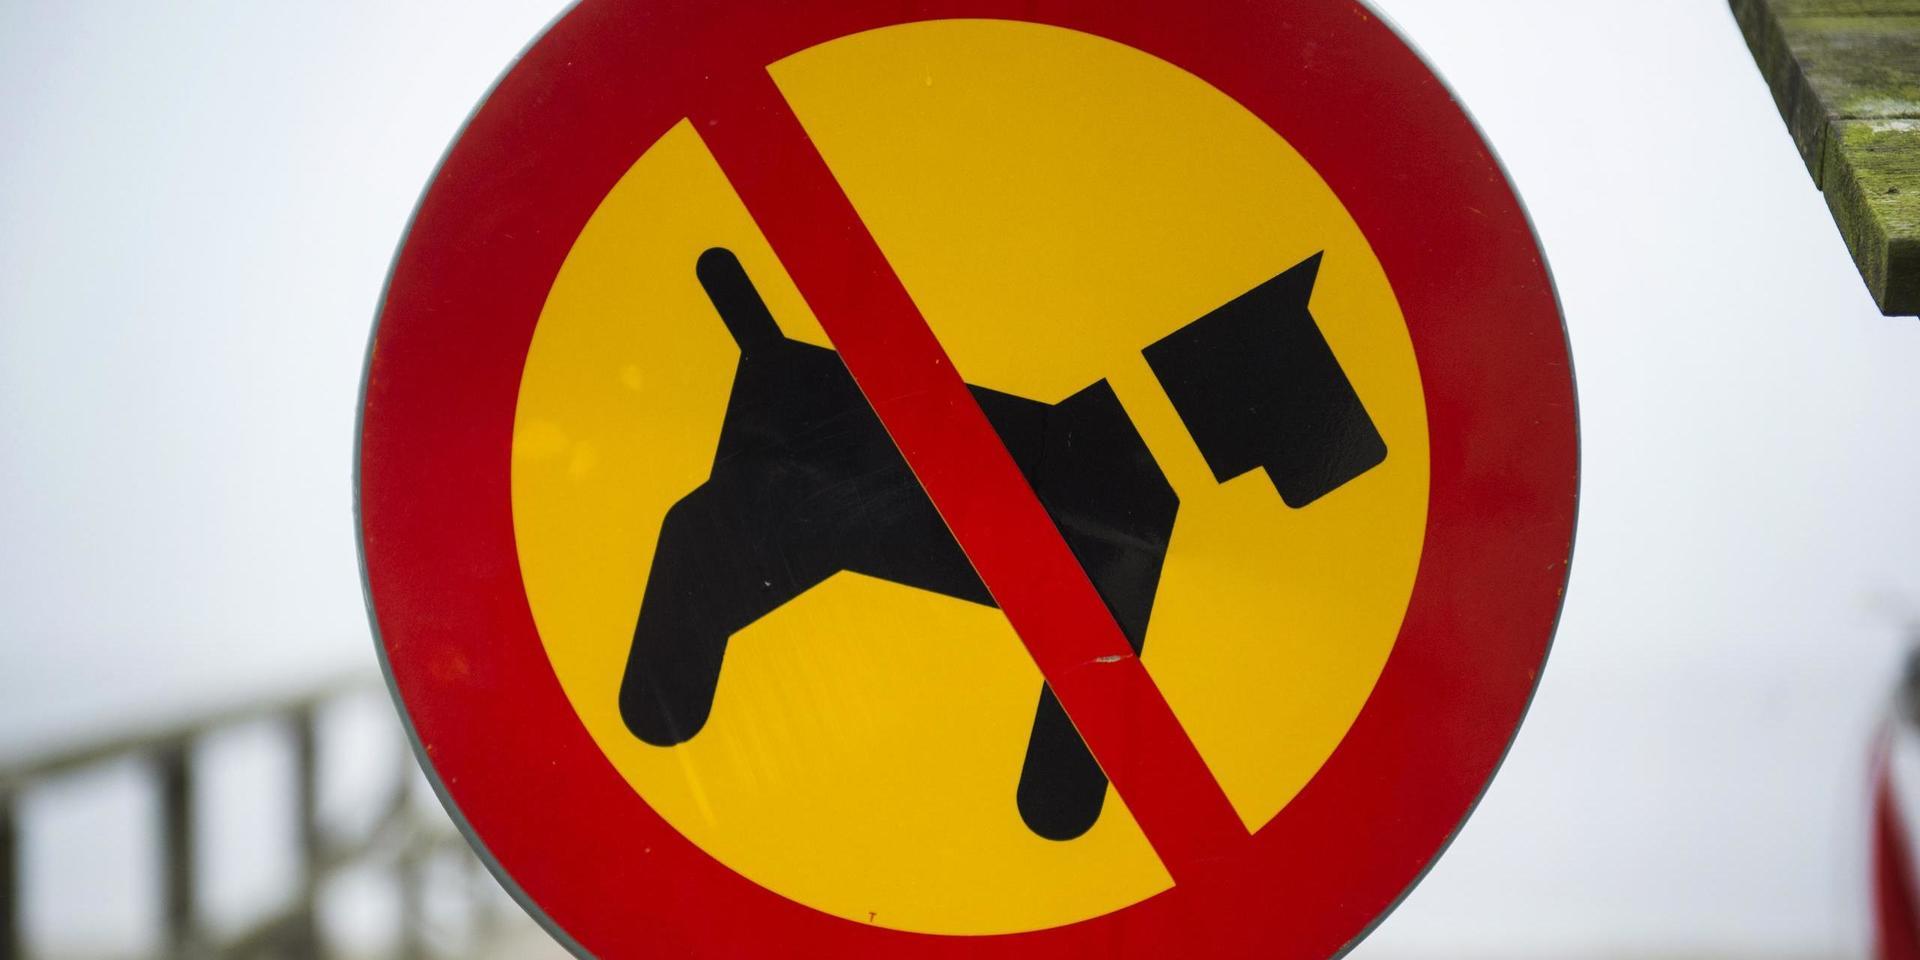 Bötfälla bilister går bra, men hundägare som trotsar förbudsskyltar går fria, skriver insändarskribenten.